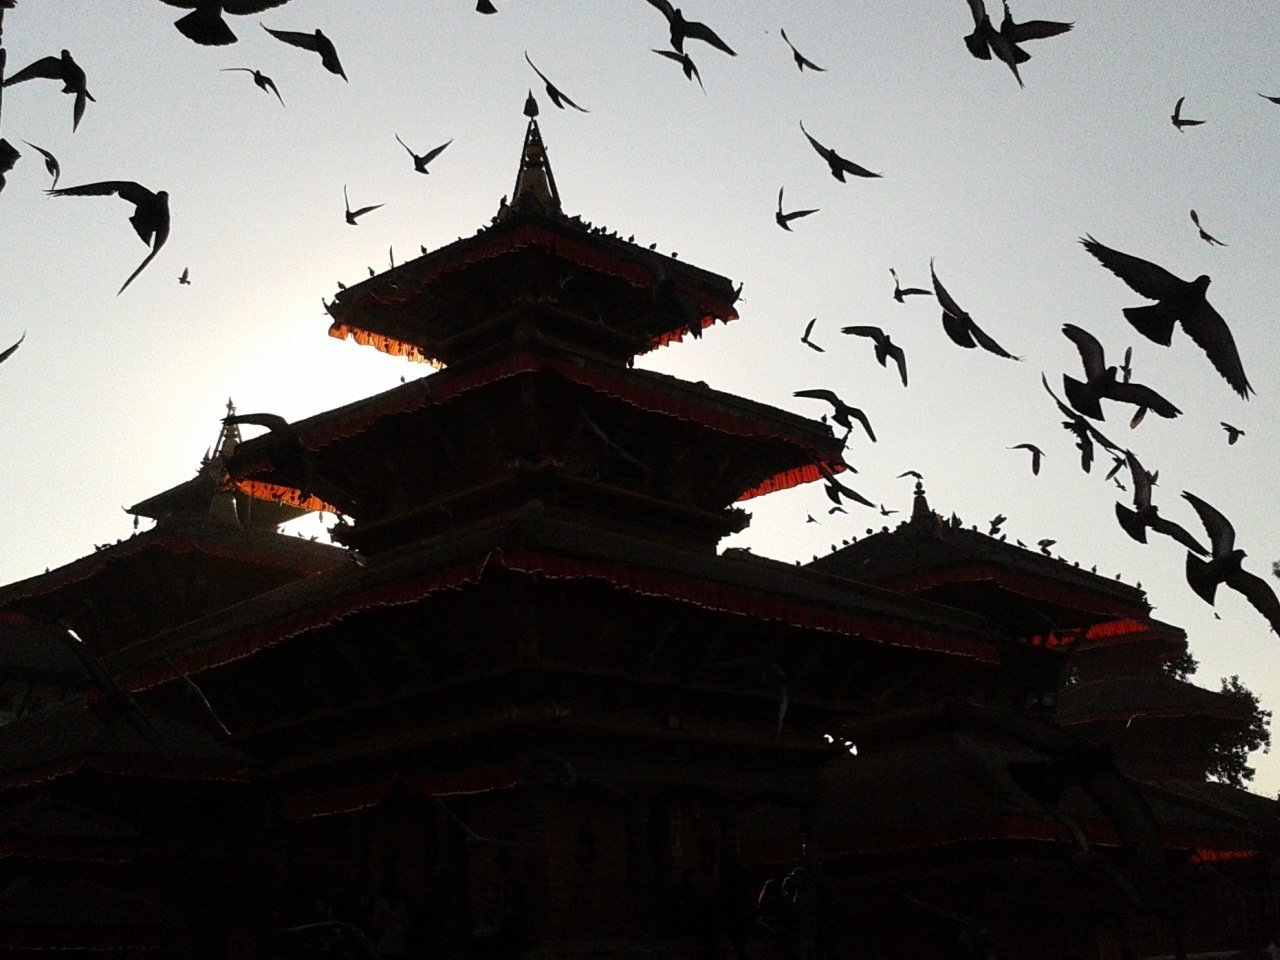 Entardecer em Basantapur, centro histórico de Kathmandu, antes do desastre.